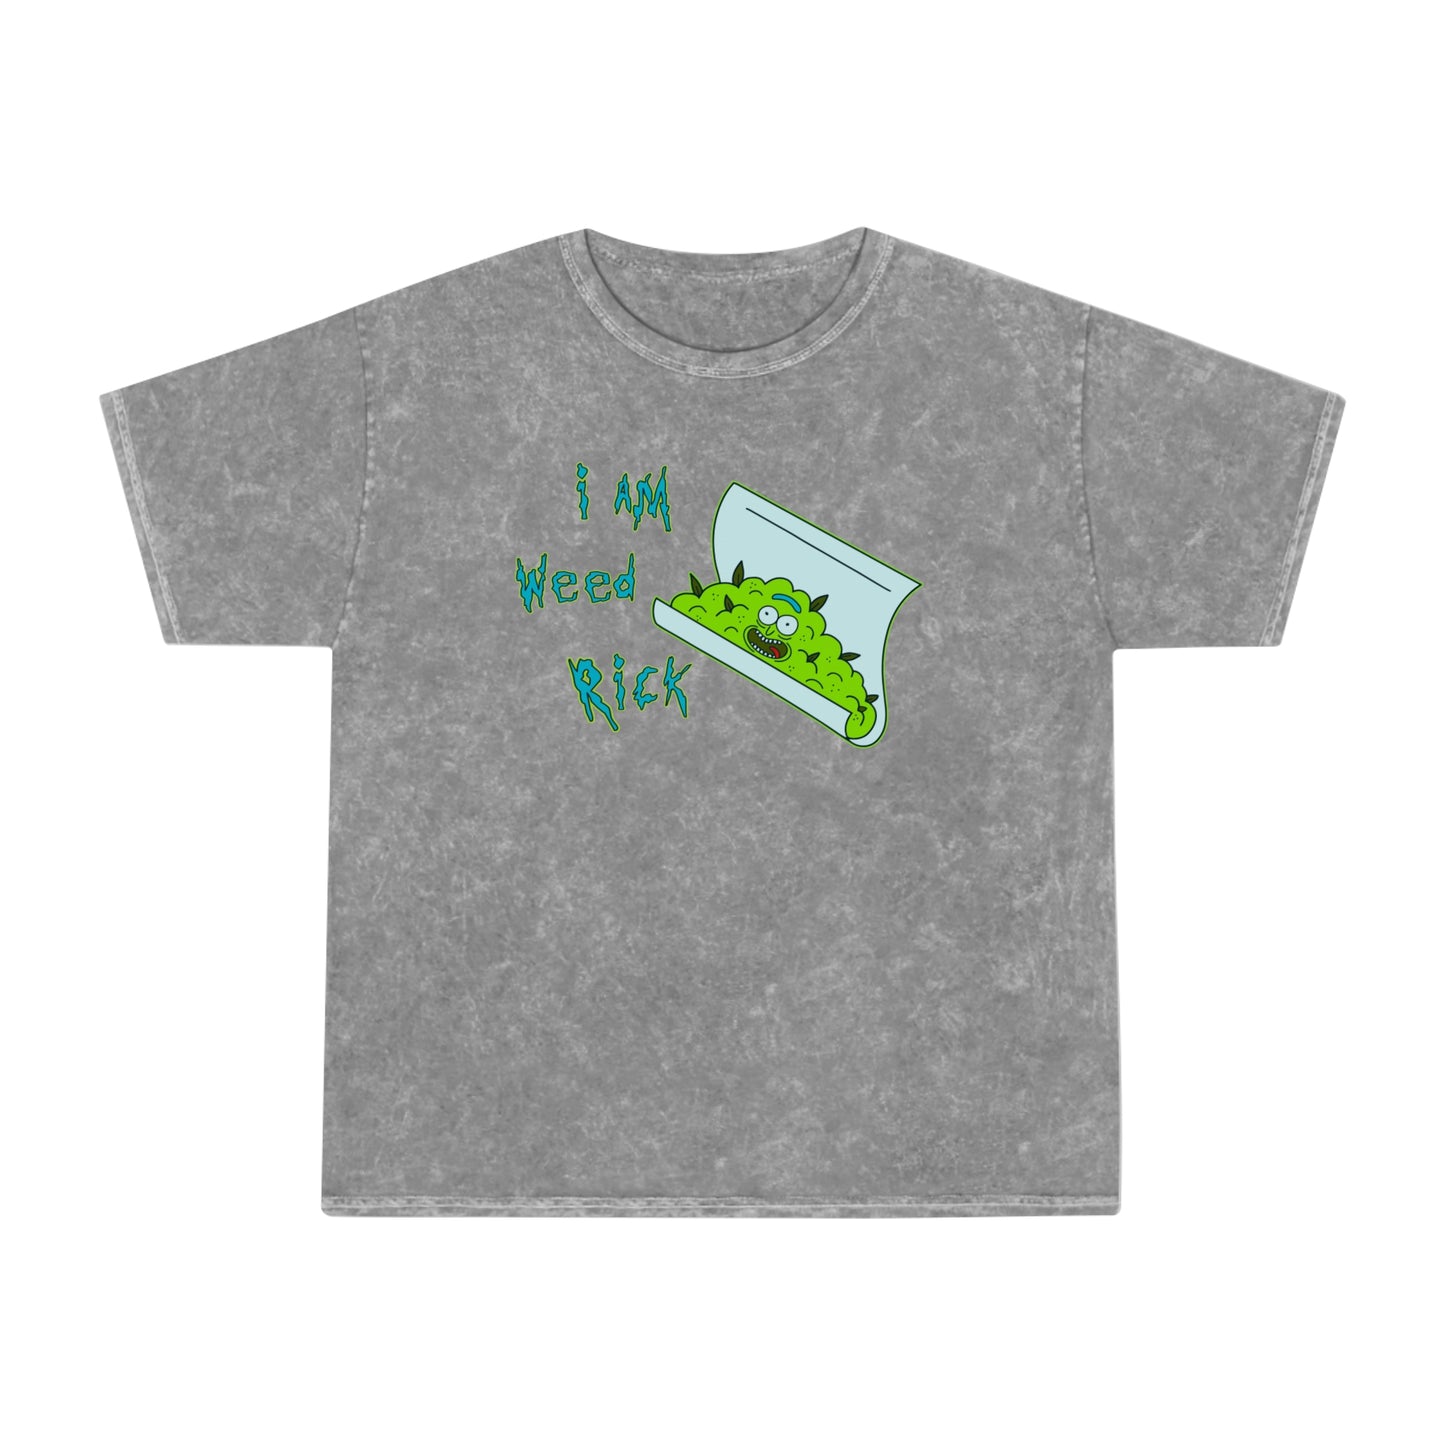 I Am Weed Rick unisex t-shirt